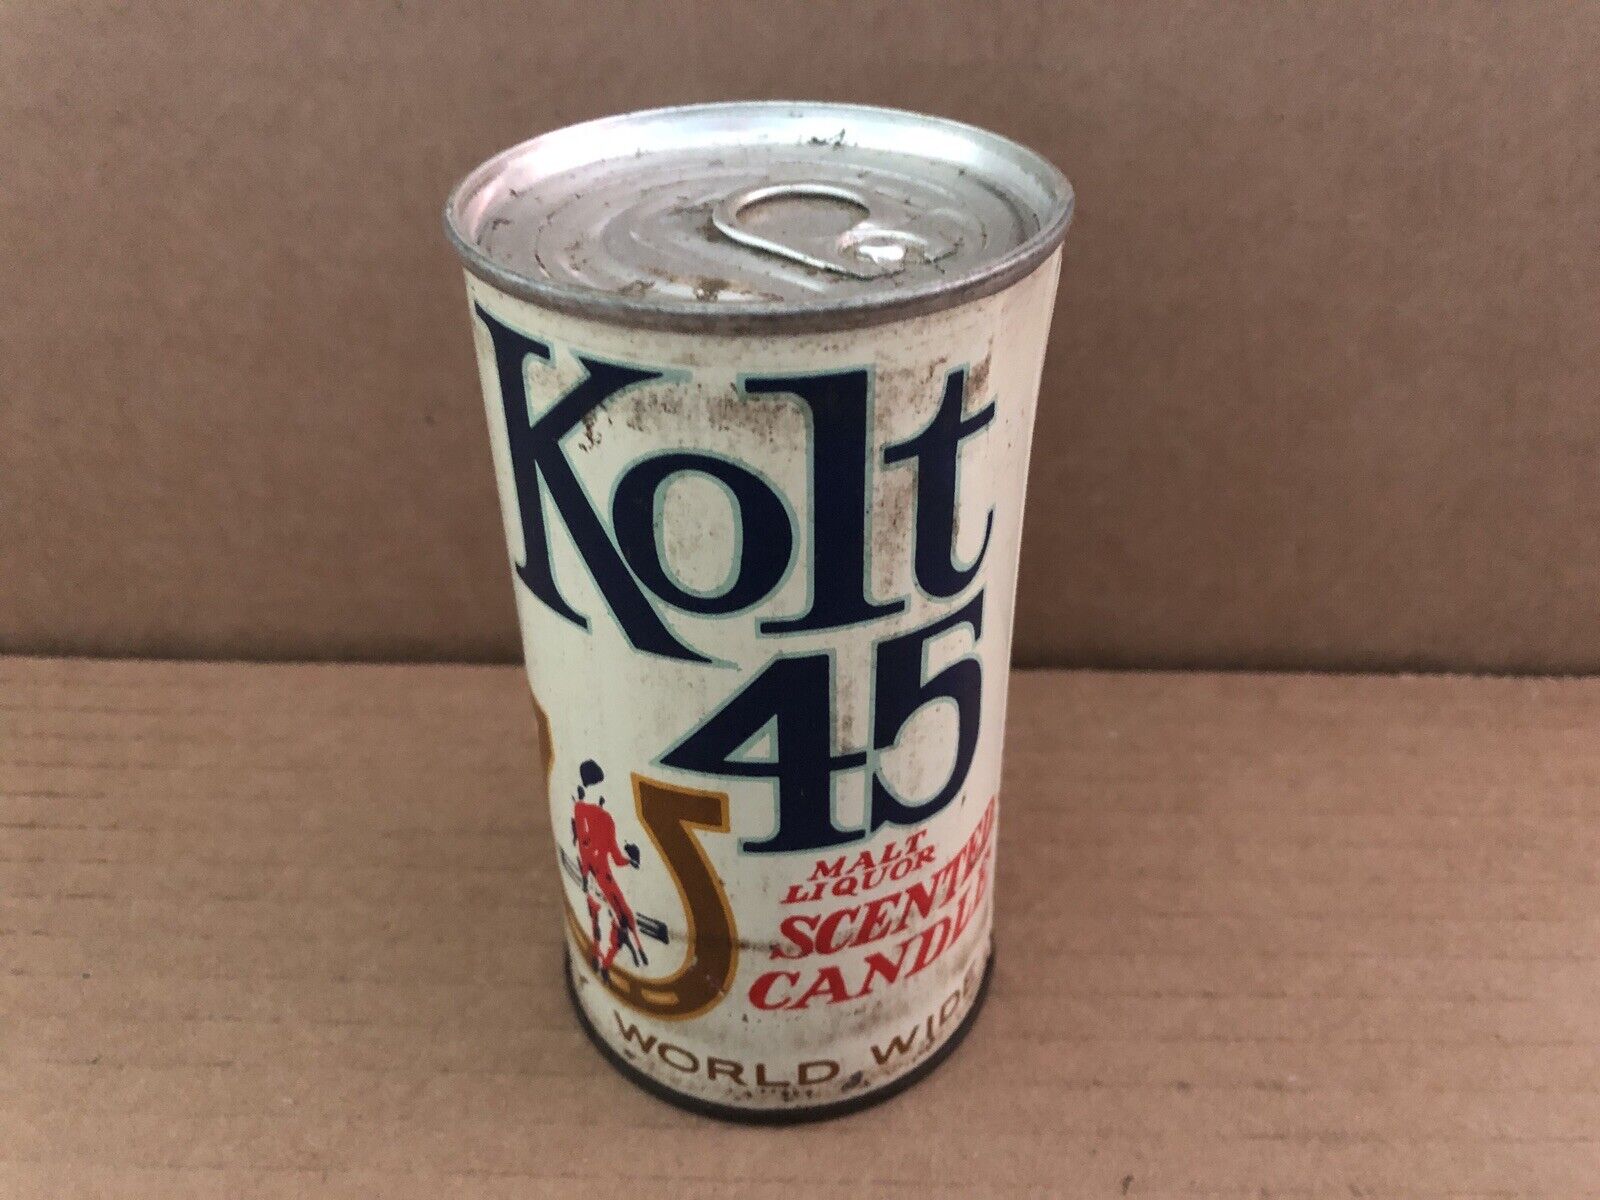 Vintage KOLT 45 Beer Can Malt Liquor Scented Candle